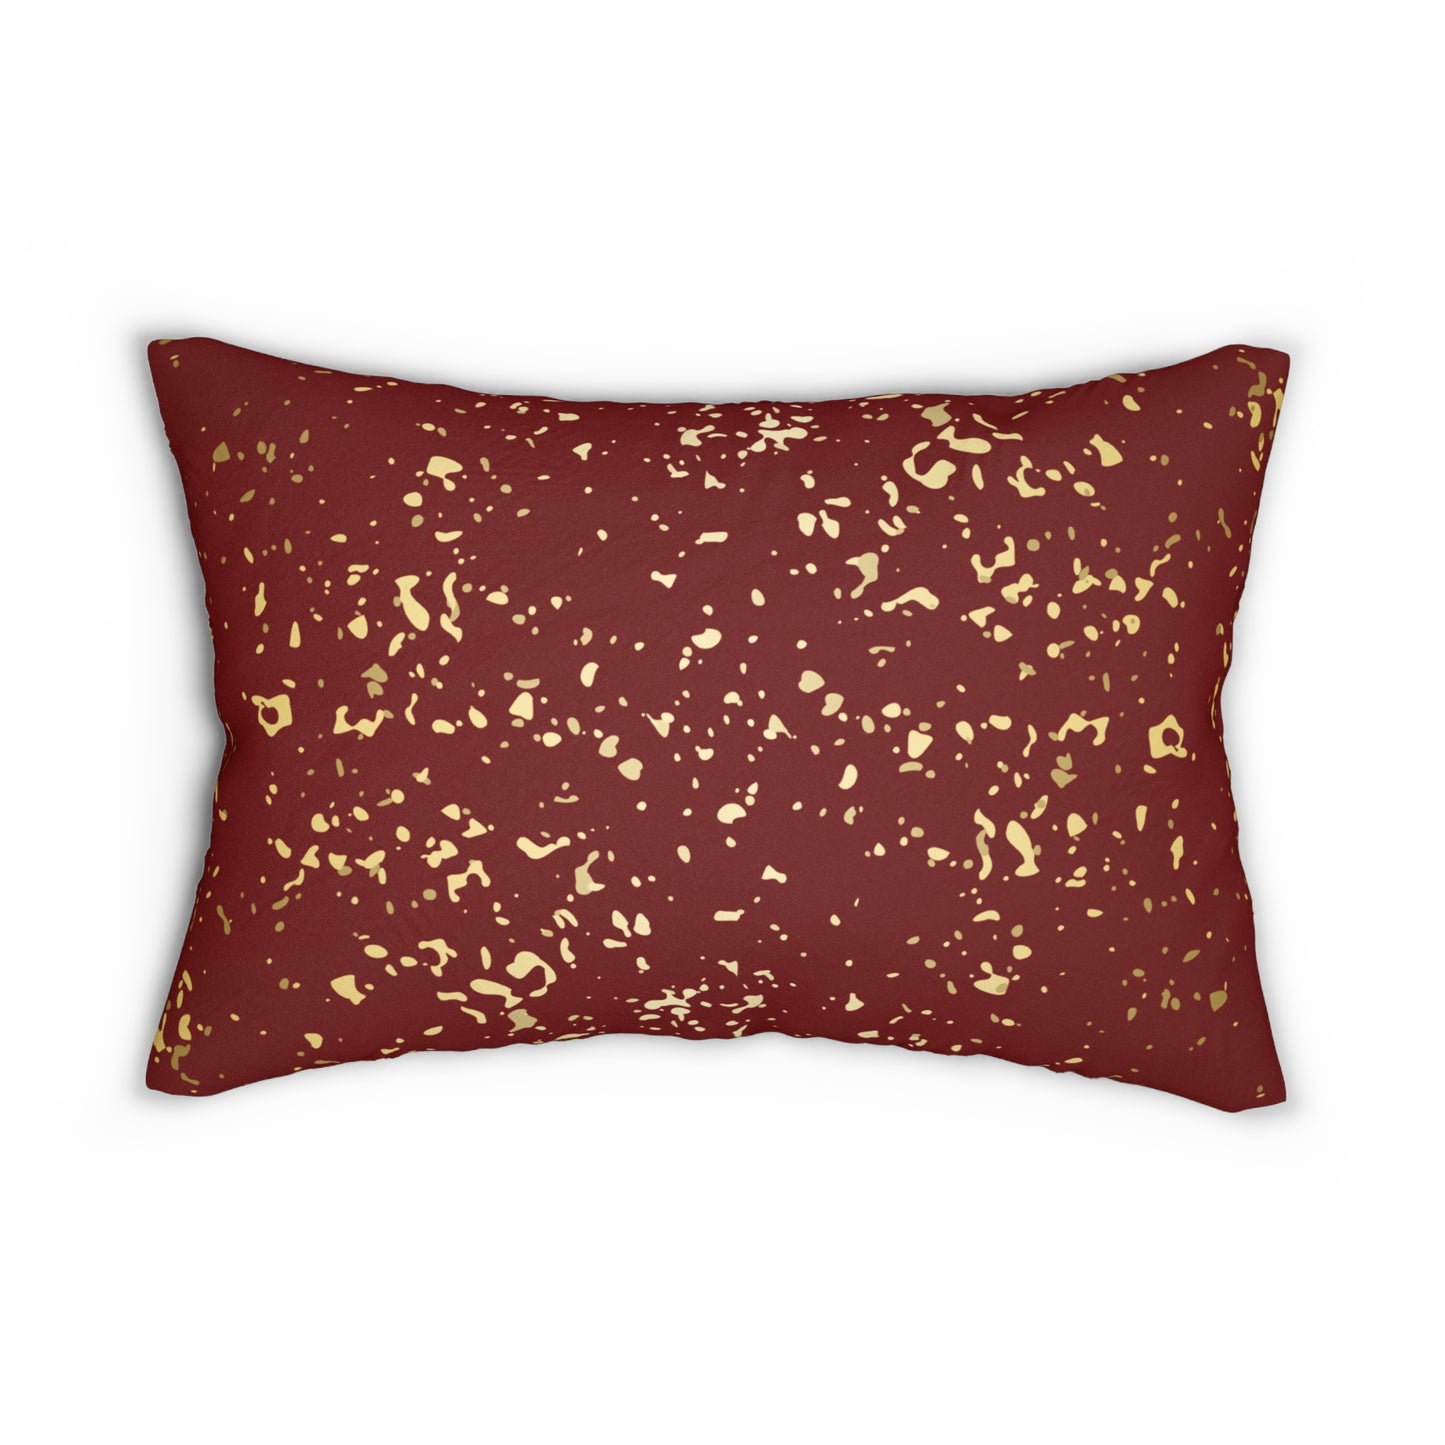 Almohada decorativa con escamas granate y doradas 